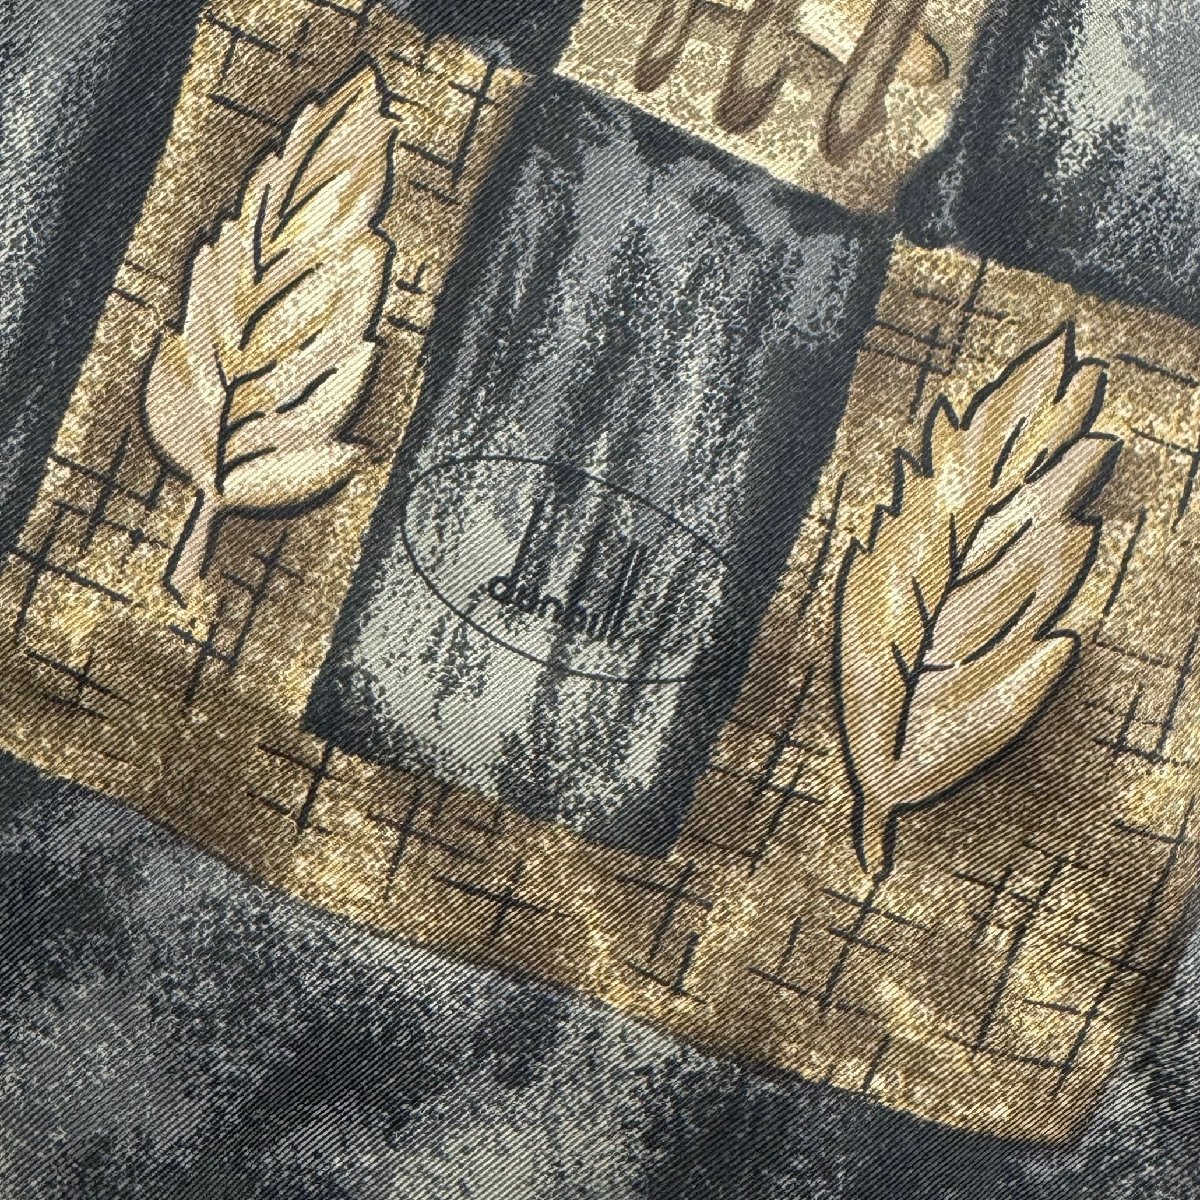  прекрасный товар Британия производства dunhill Dunhill высококлассный leaf лист общий рисунок принт общий шелк шелк 100% палантин шарф бахрома 150×30cm чёрный × чай 